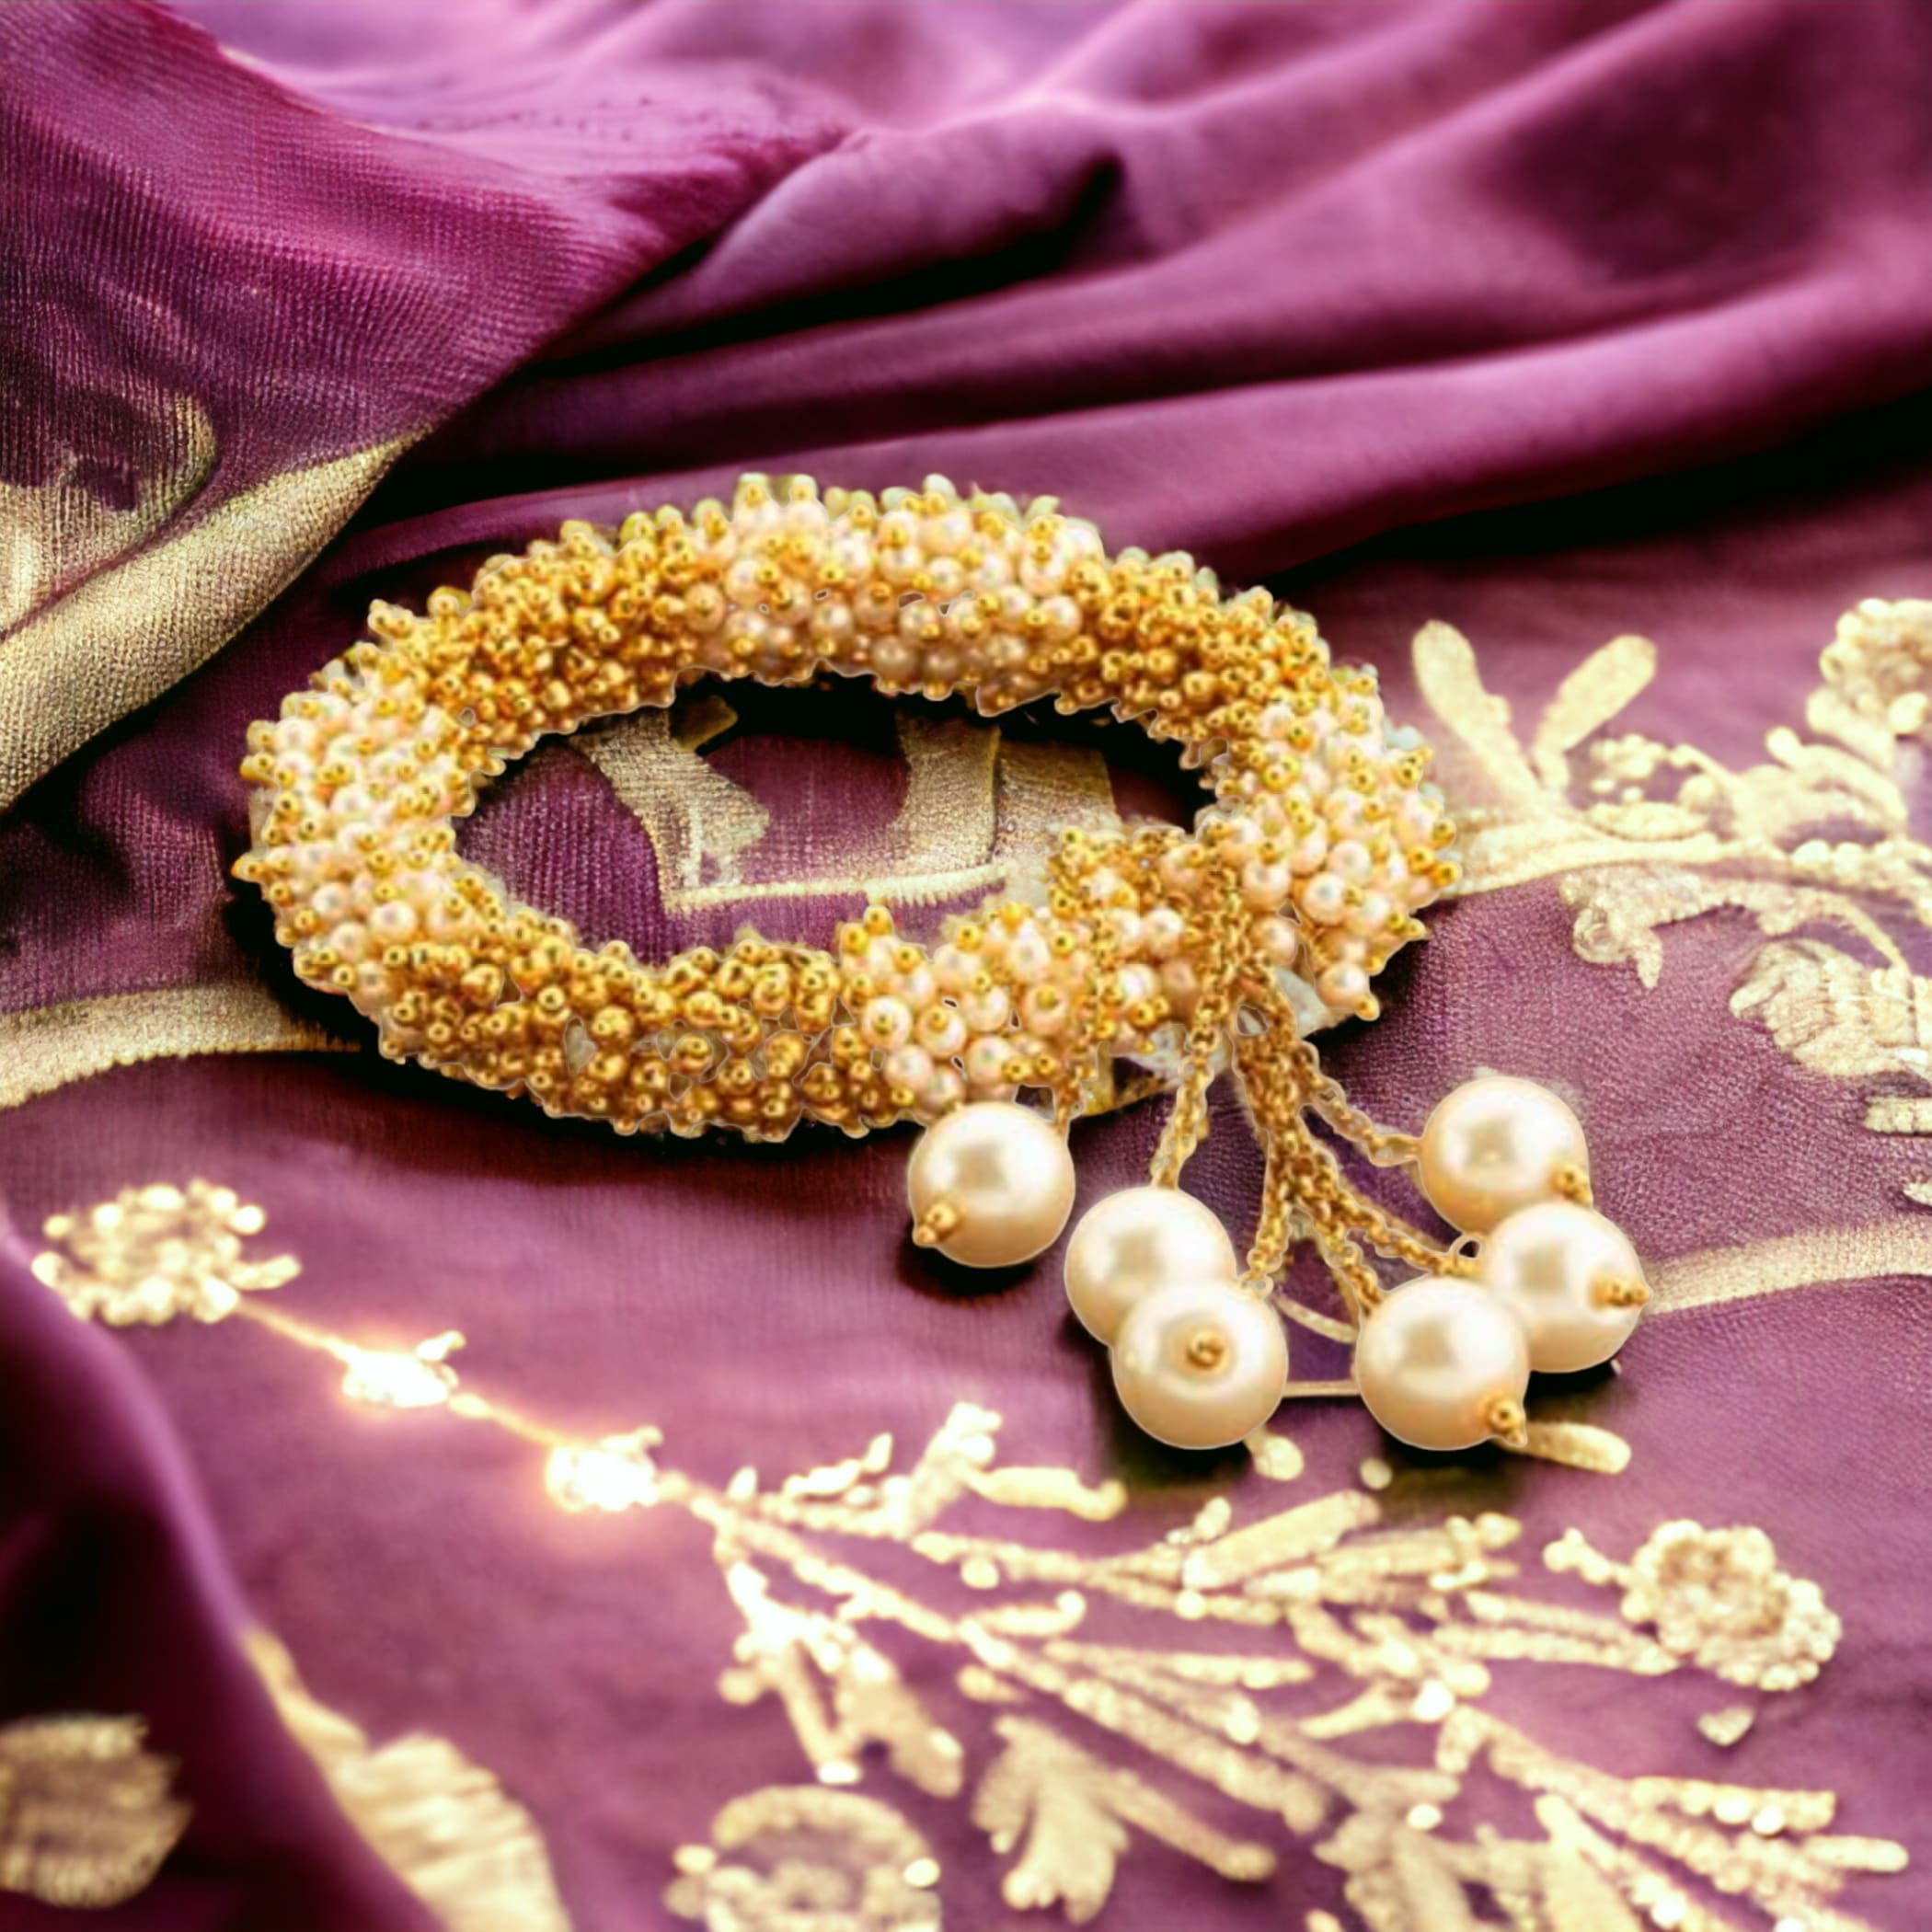 Antique adjustable bracelet with gold plating bangle